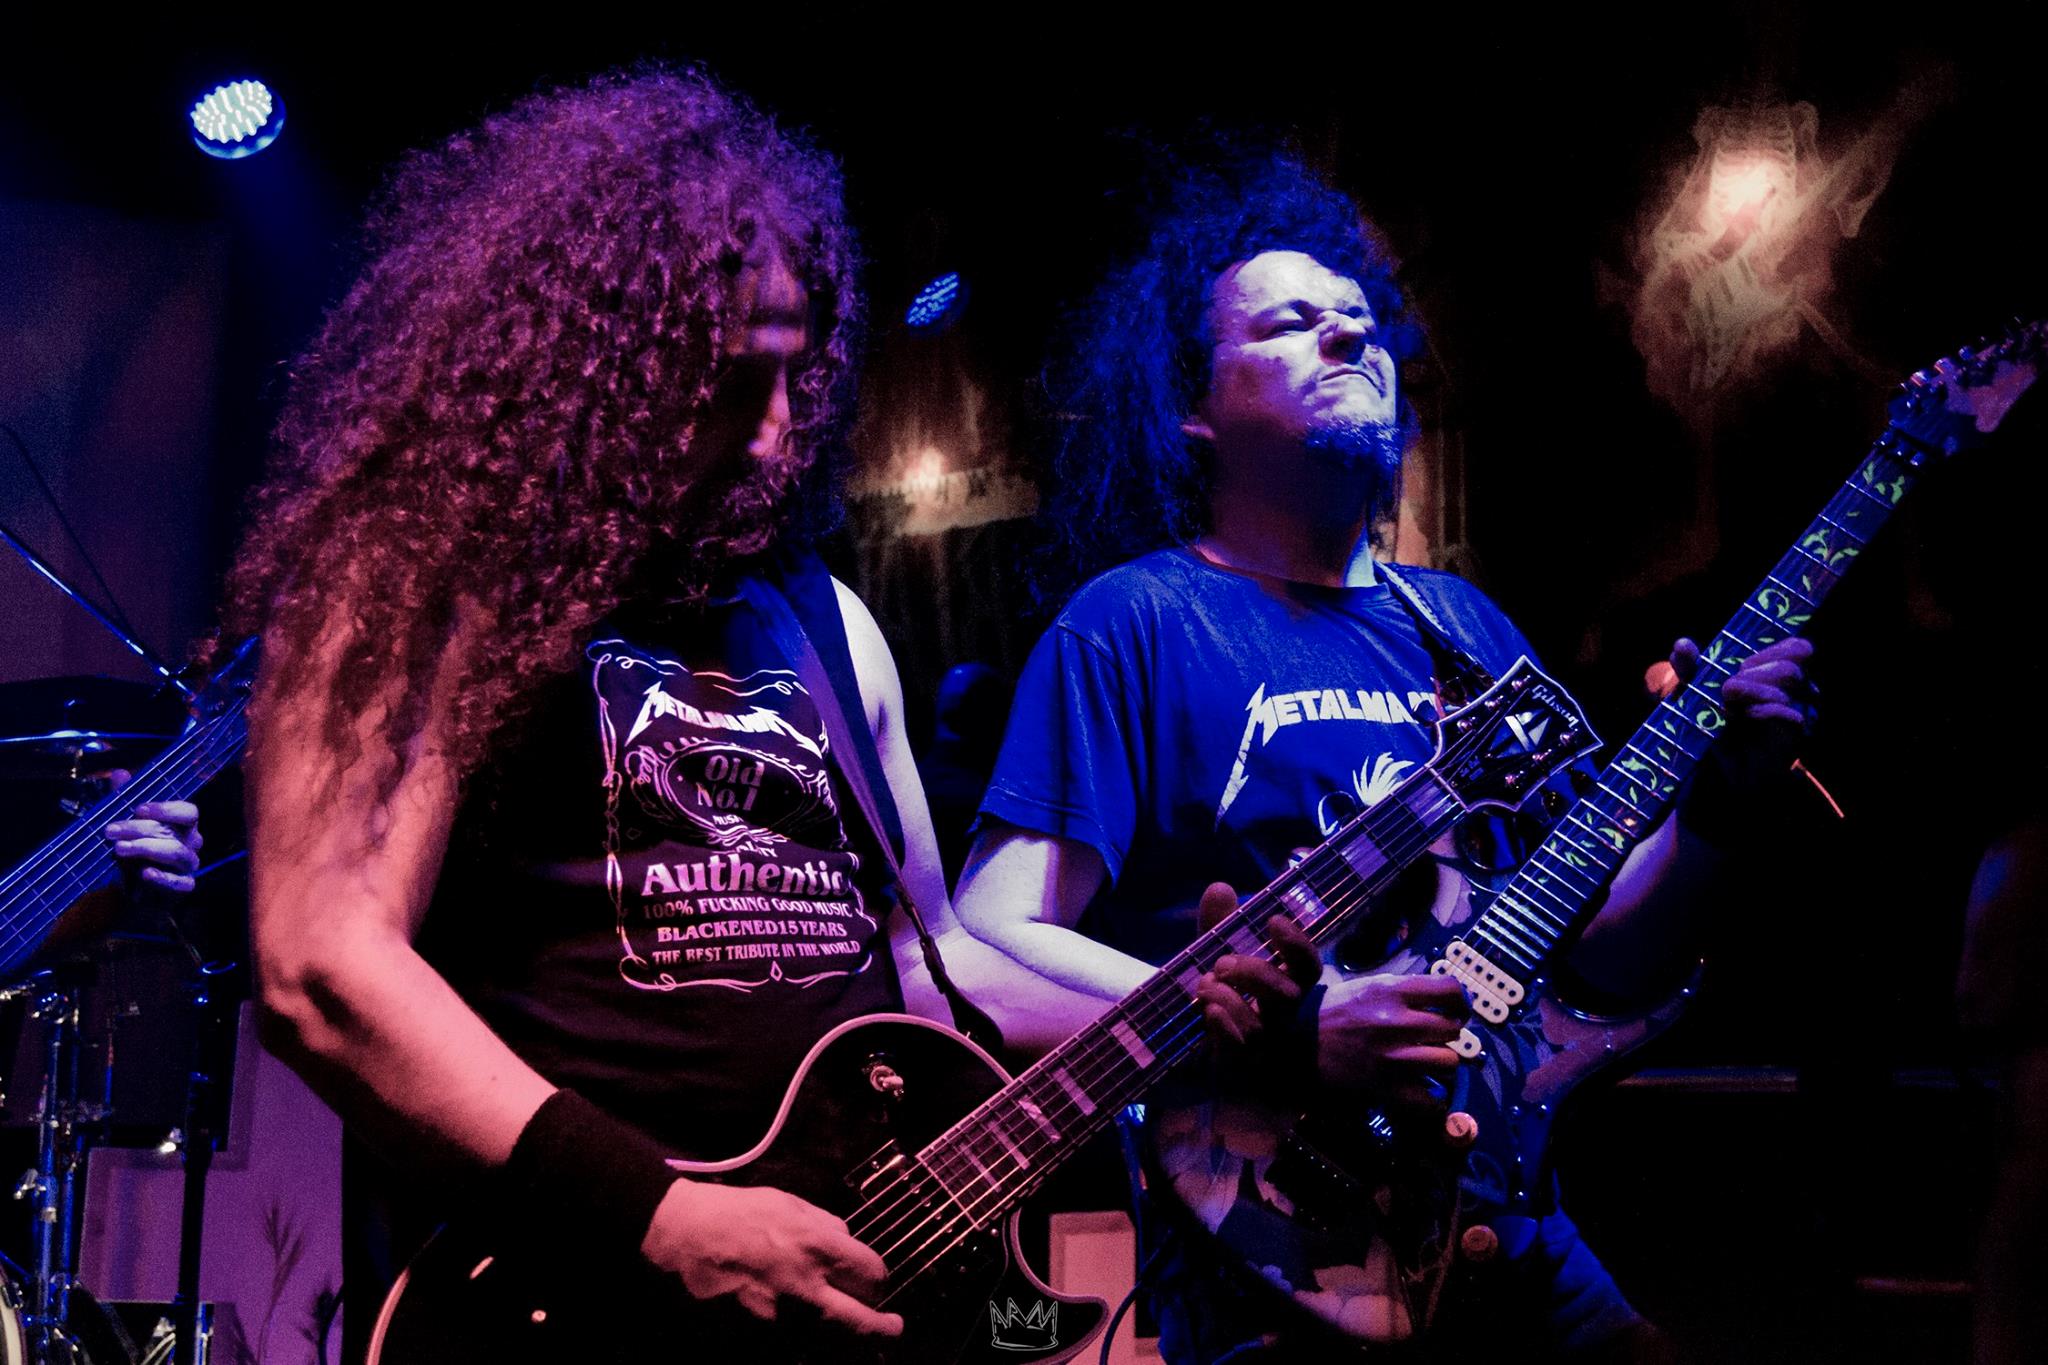 El tributo a Metallica Metalmanía pasará por Granada el próximo 22 de Septiembre.